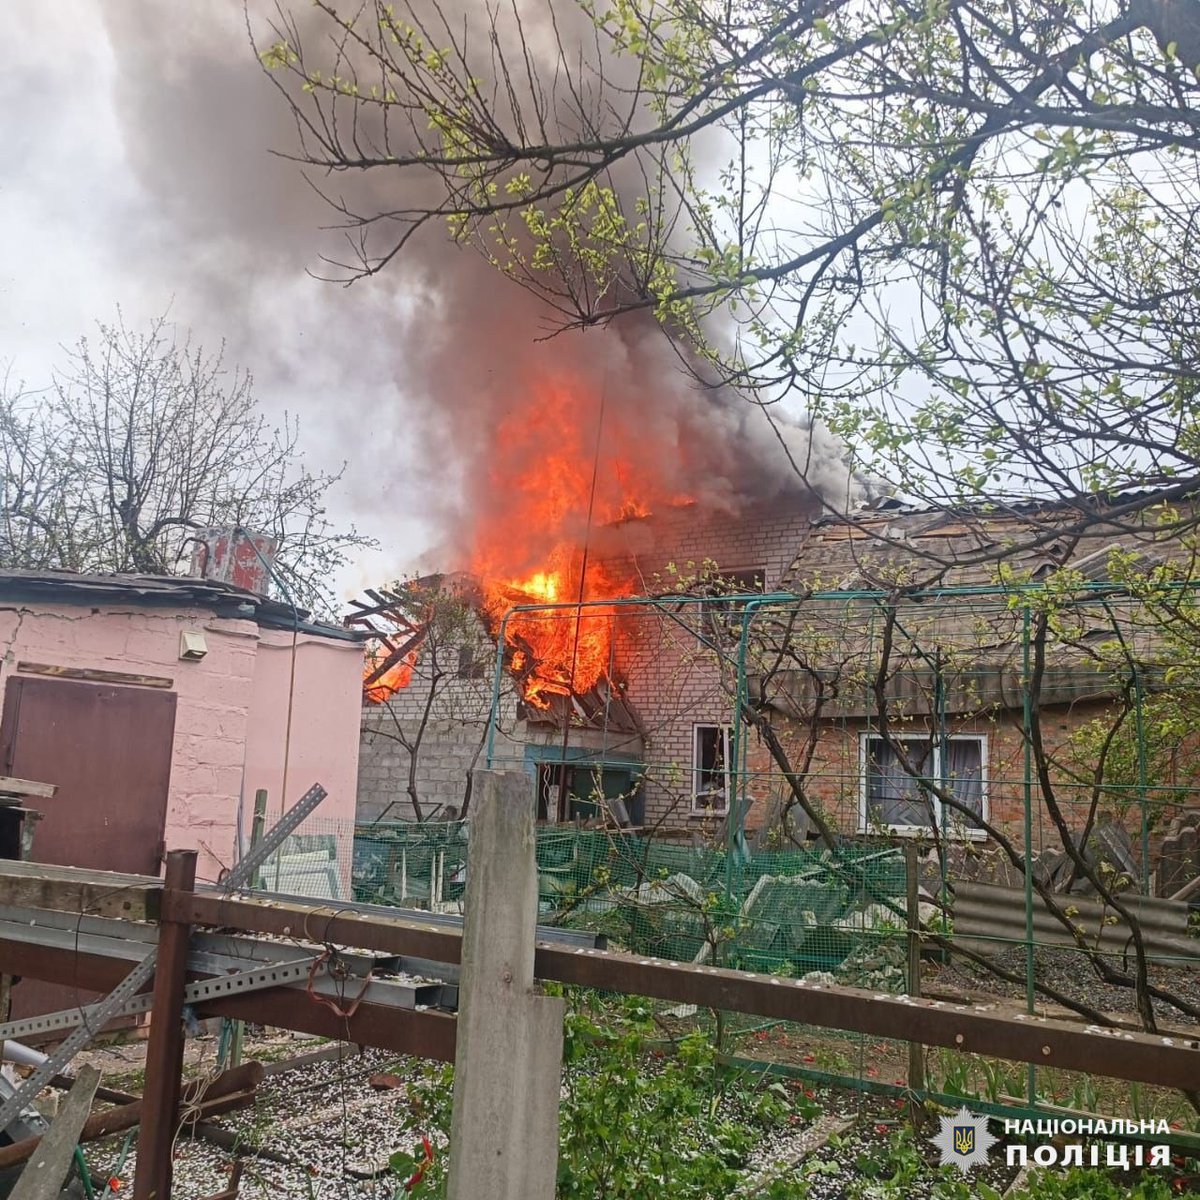 俄罗斯空袭哈尔科夫州德尔哈奇造成 3 名儿童和另一人受伤